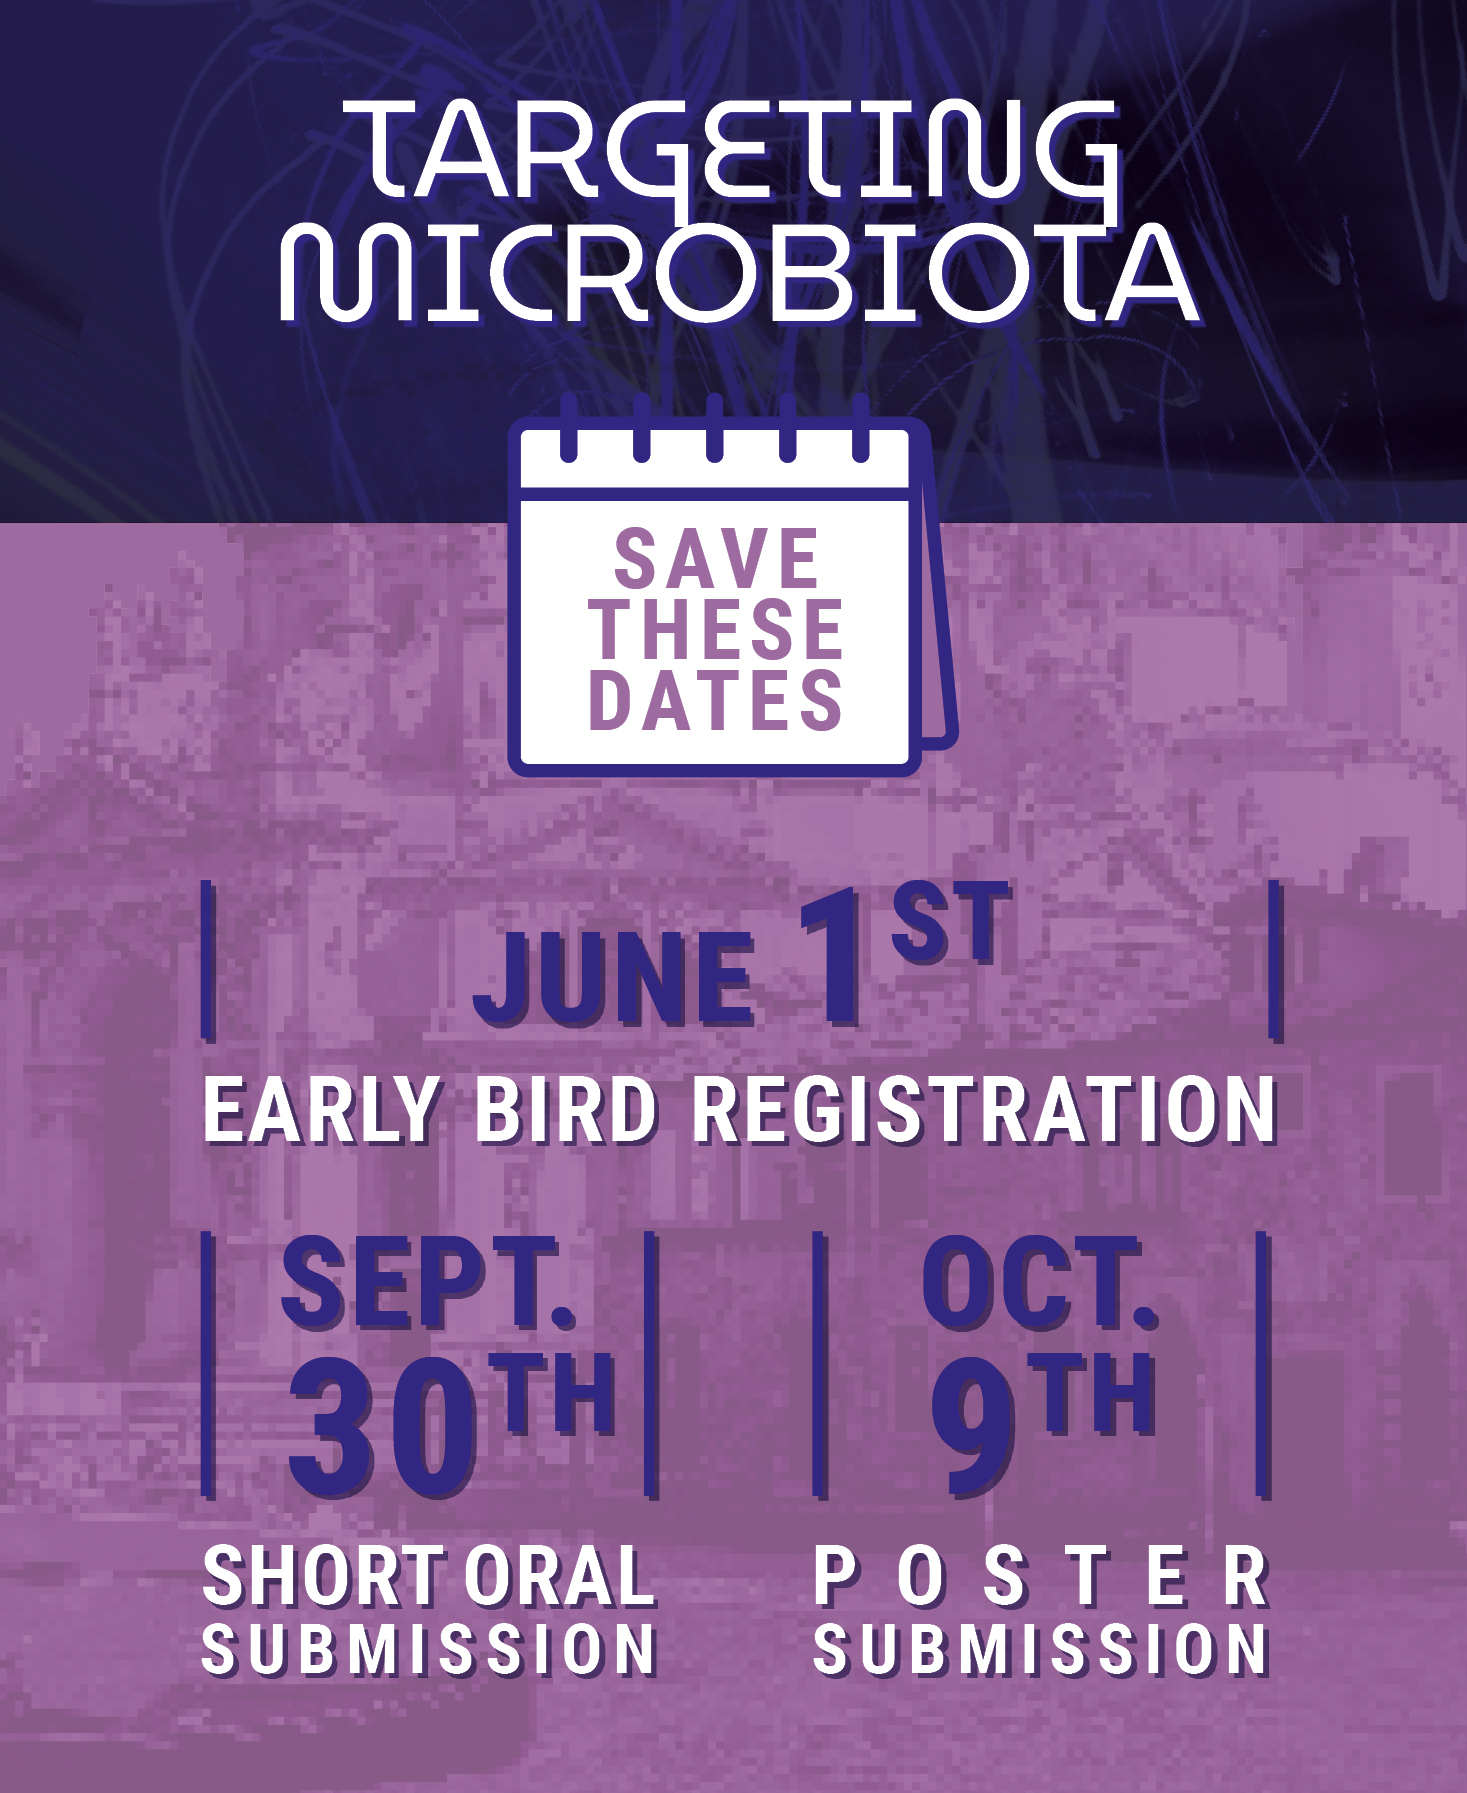 Microbiota Key Dates V2